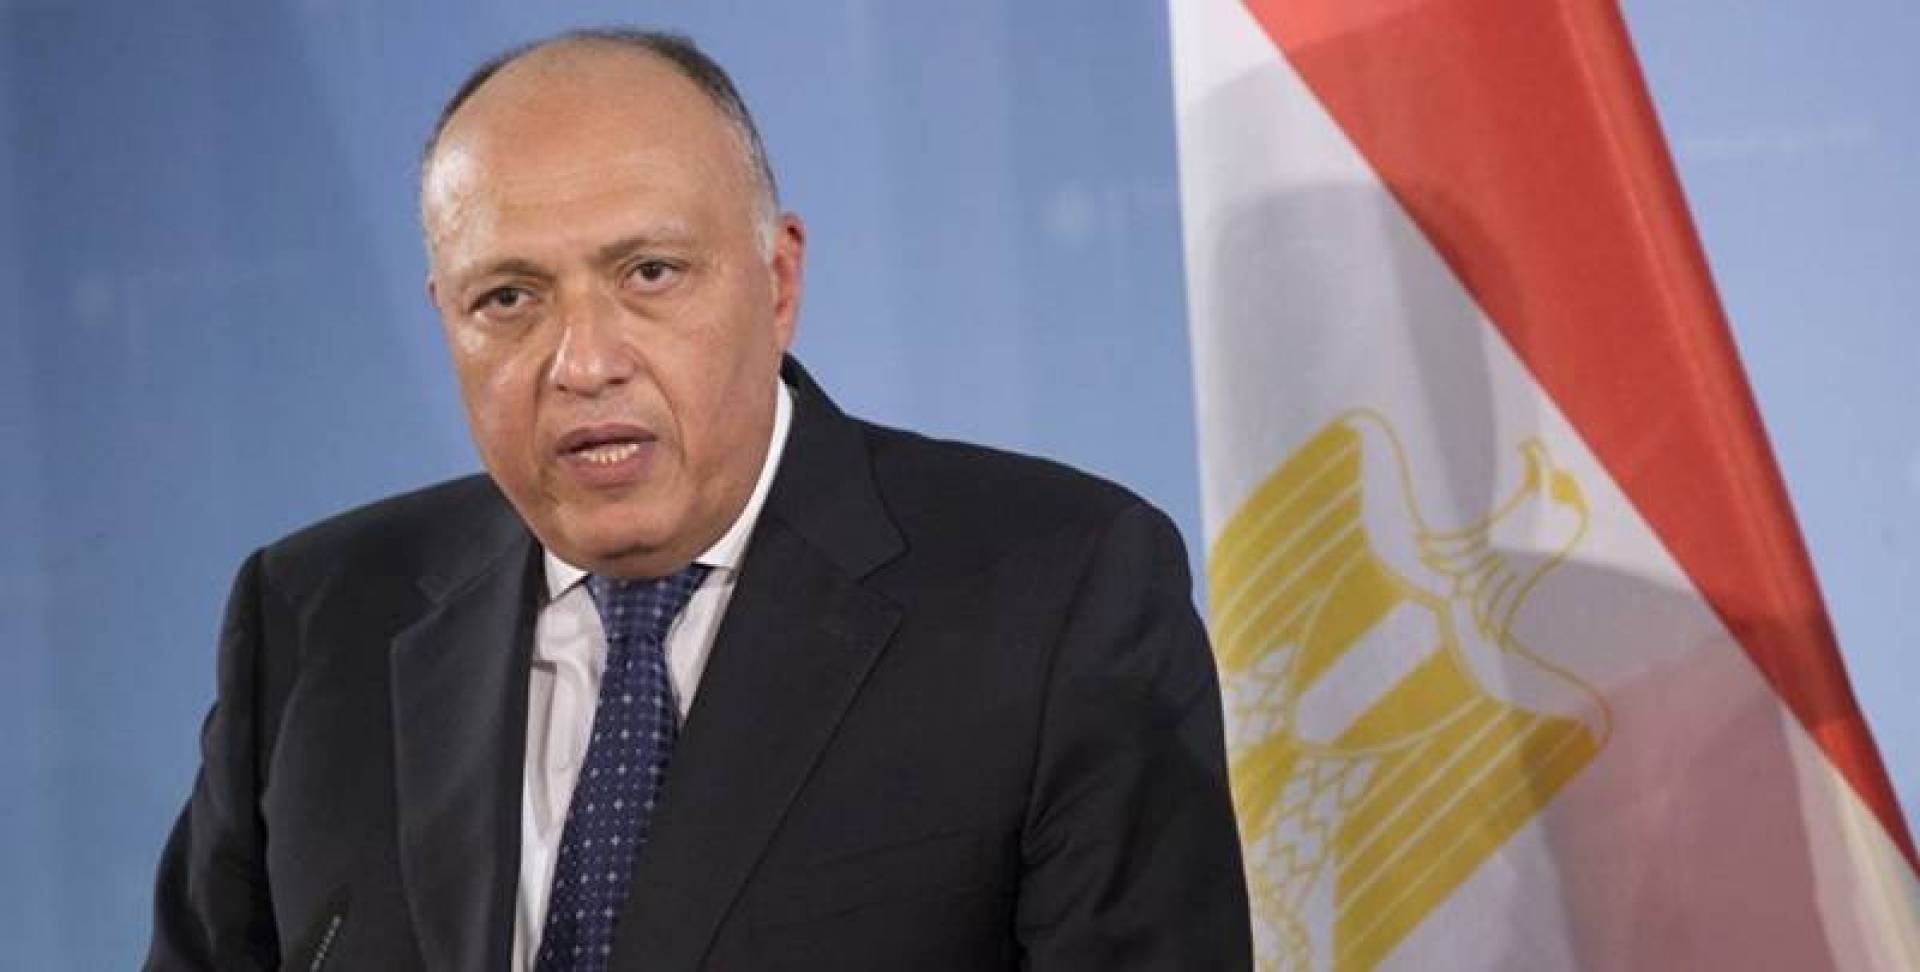 عاجل "رسمياً" مصر تحيل ملف سد النهضة إلى مجلس الأمن لتجنب التوتر وحفظ الأمن والسلم الدوليين 7